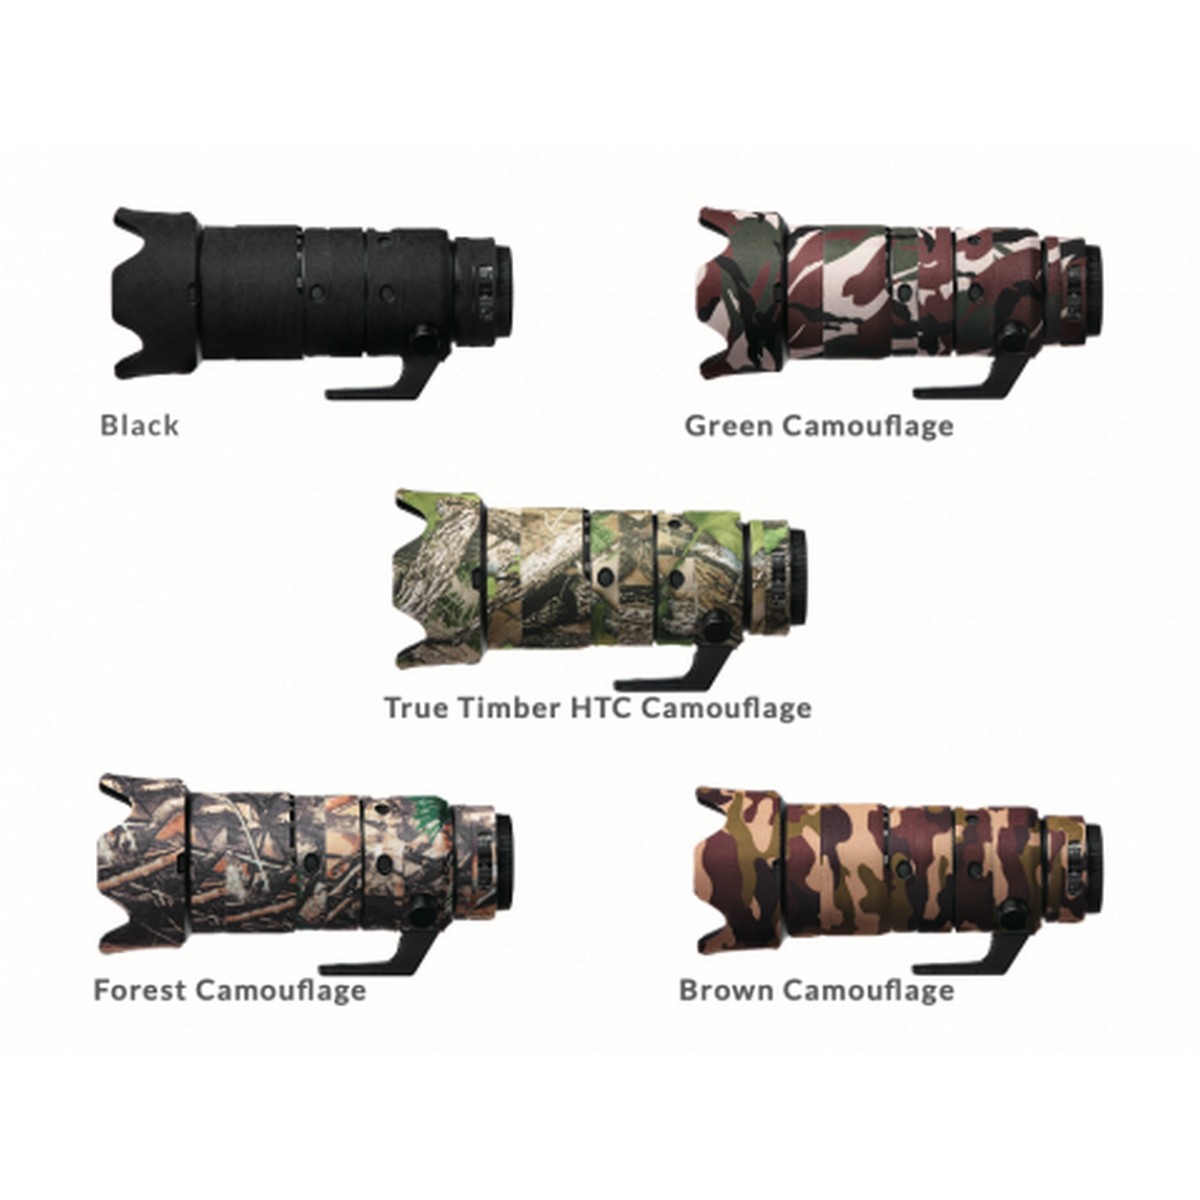 Easycover Lens Oak Objektivschutz für Nikkor Z 70-200 mm 1:2,8 VR S Braun Camouflage